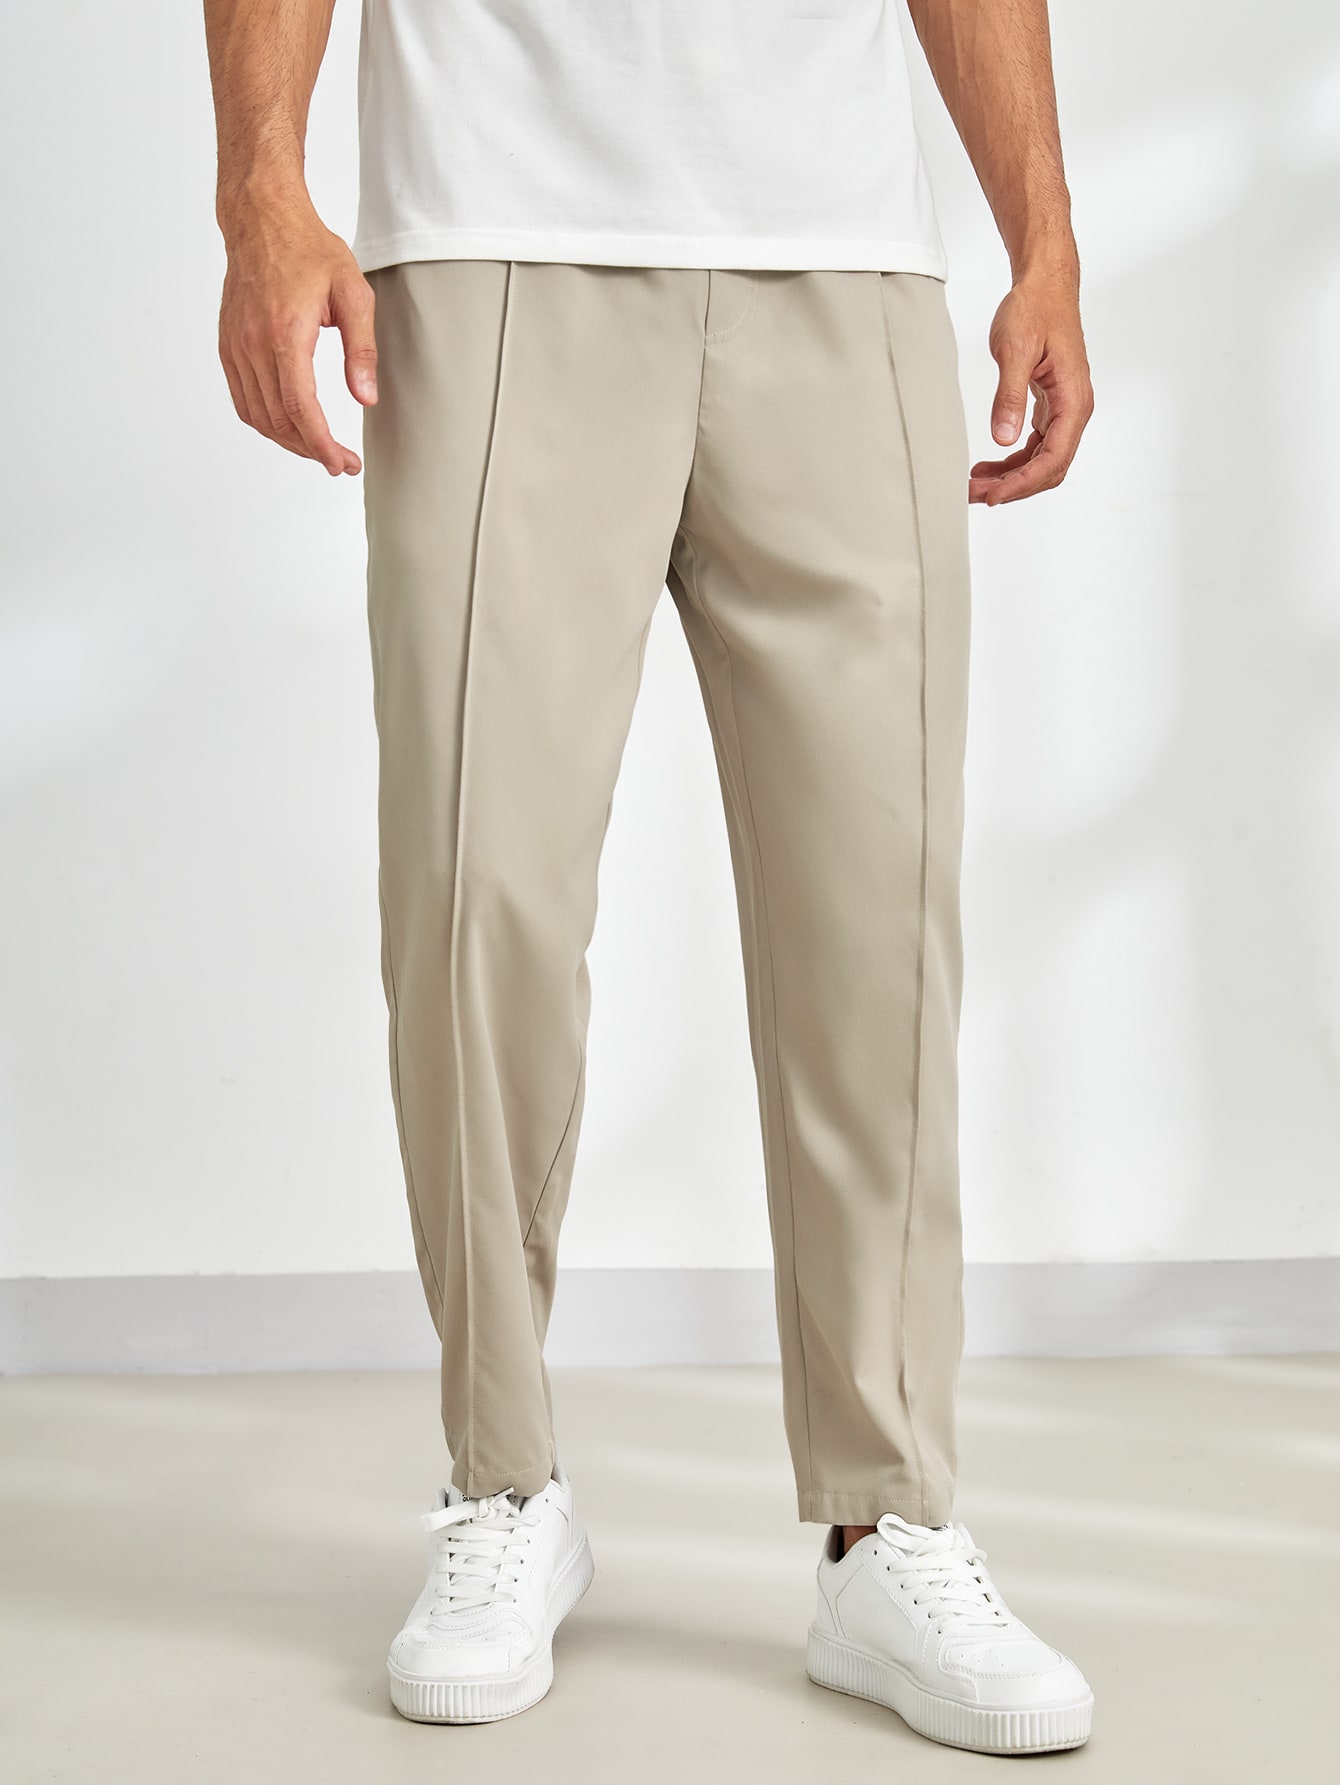 цена Мужские однотонные повседневные зауженные брюки Manfinity Homme с эластичной резинкой на талии, хаки